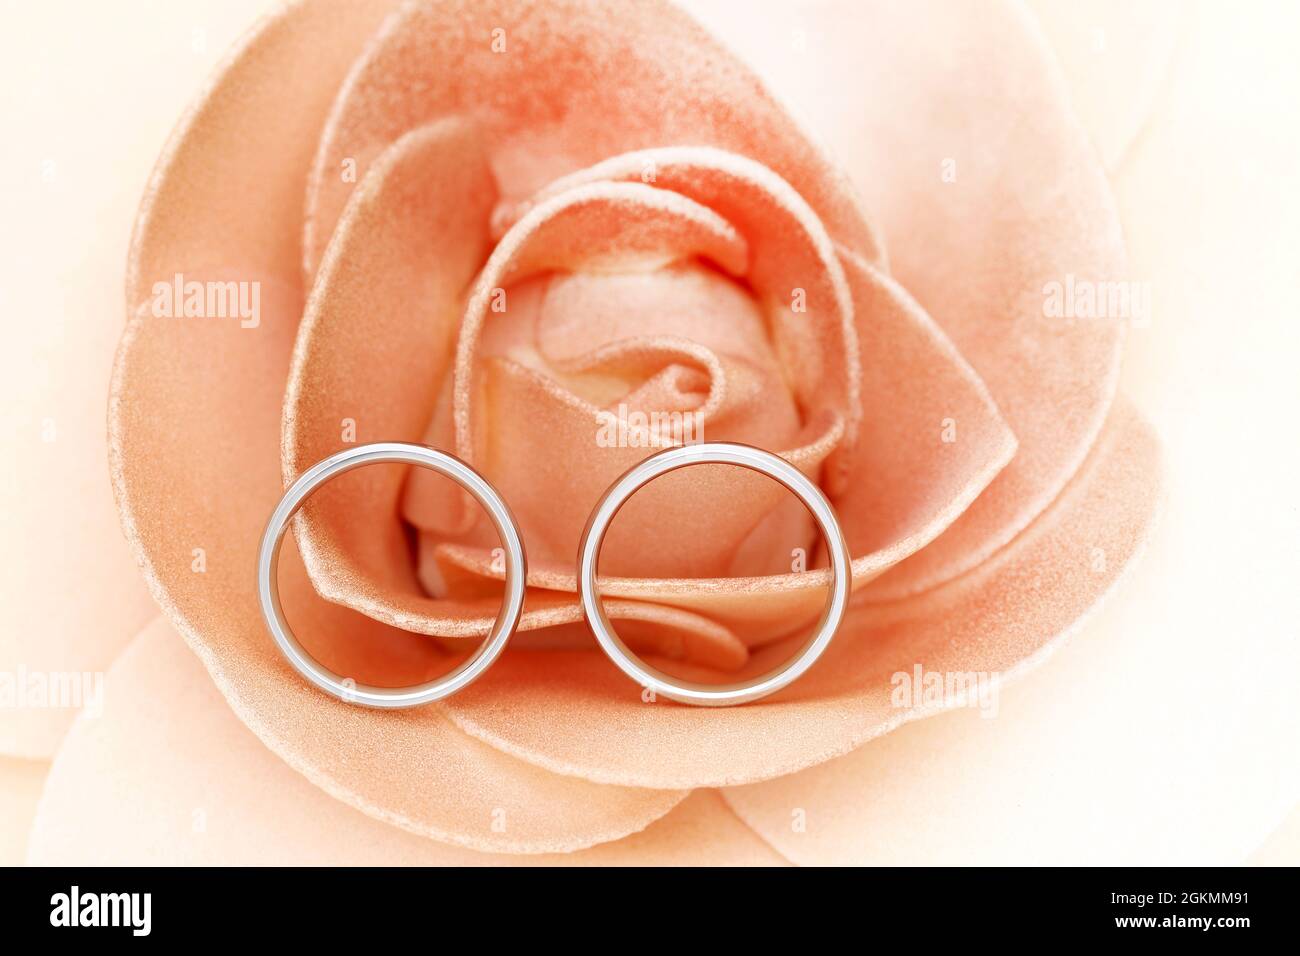 Nahaufnahme eines eleganten silbernen Pairings in der Rosenblüte, verheiratetes Konzept Stockfoto